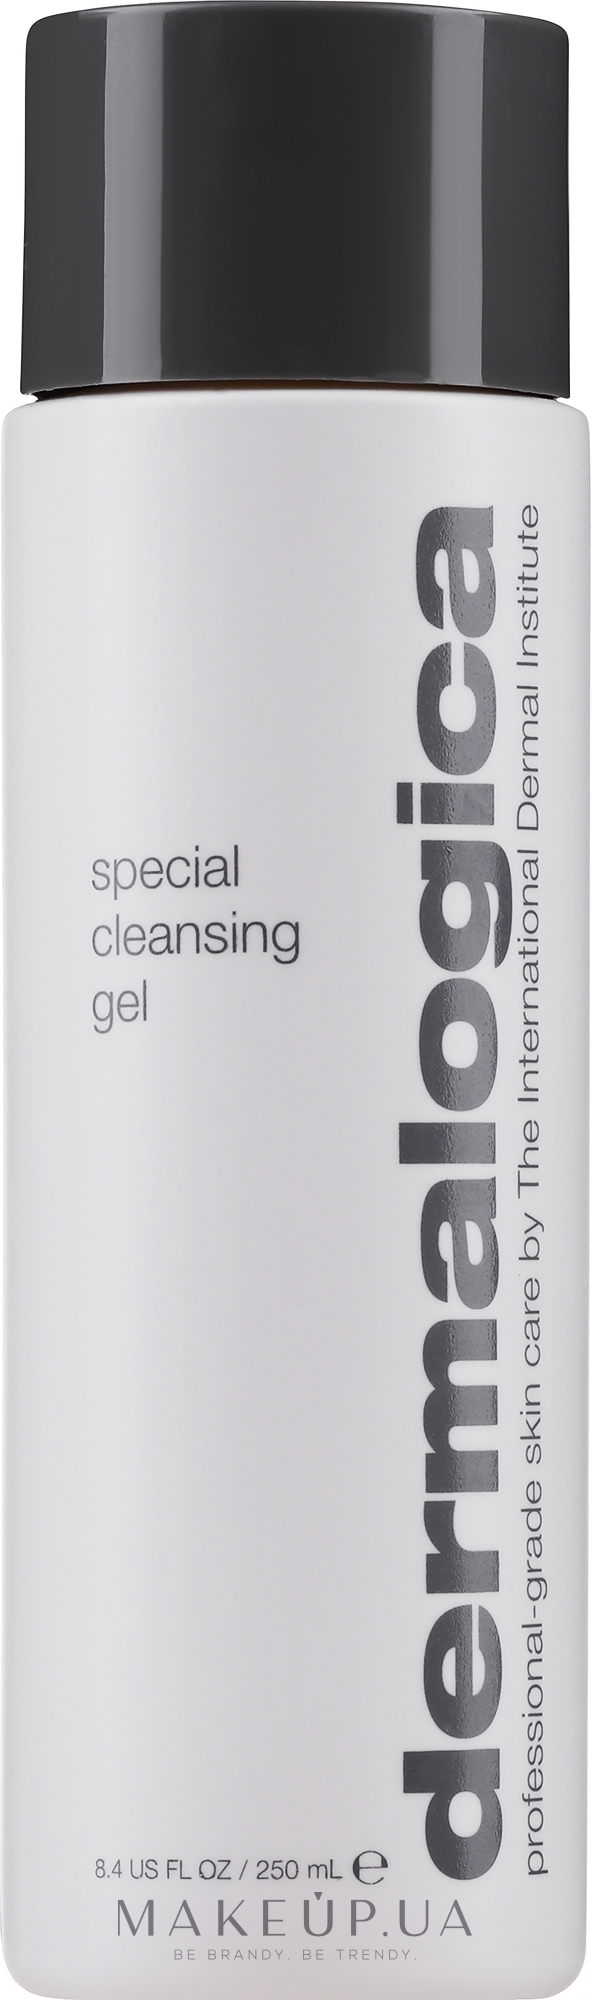 Специальный гель-очиститель для лица - Dermalogica Daily Skin Health Special Cleansing Gel — фото 250ml